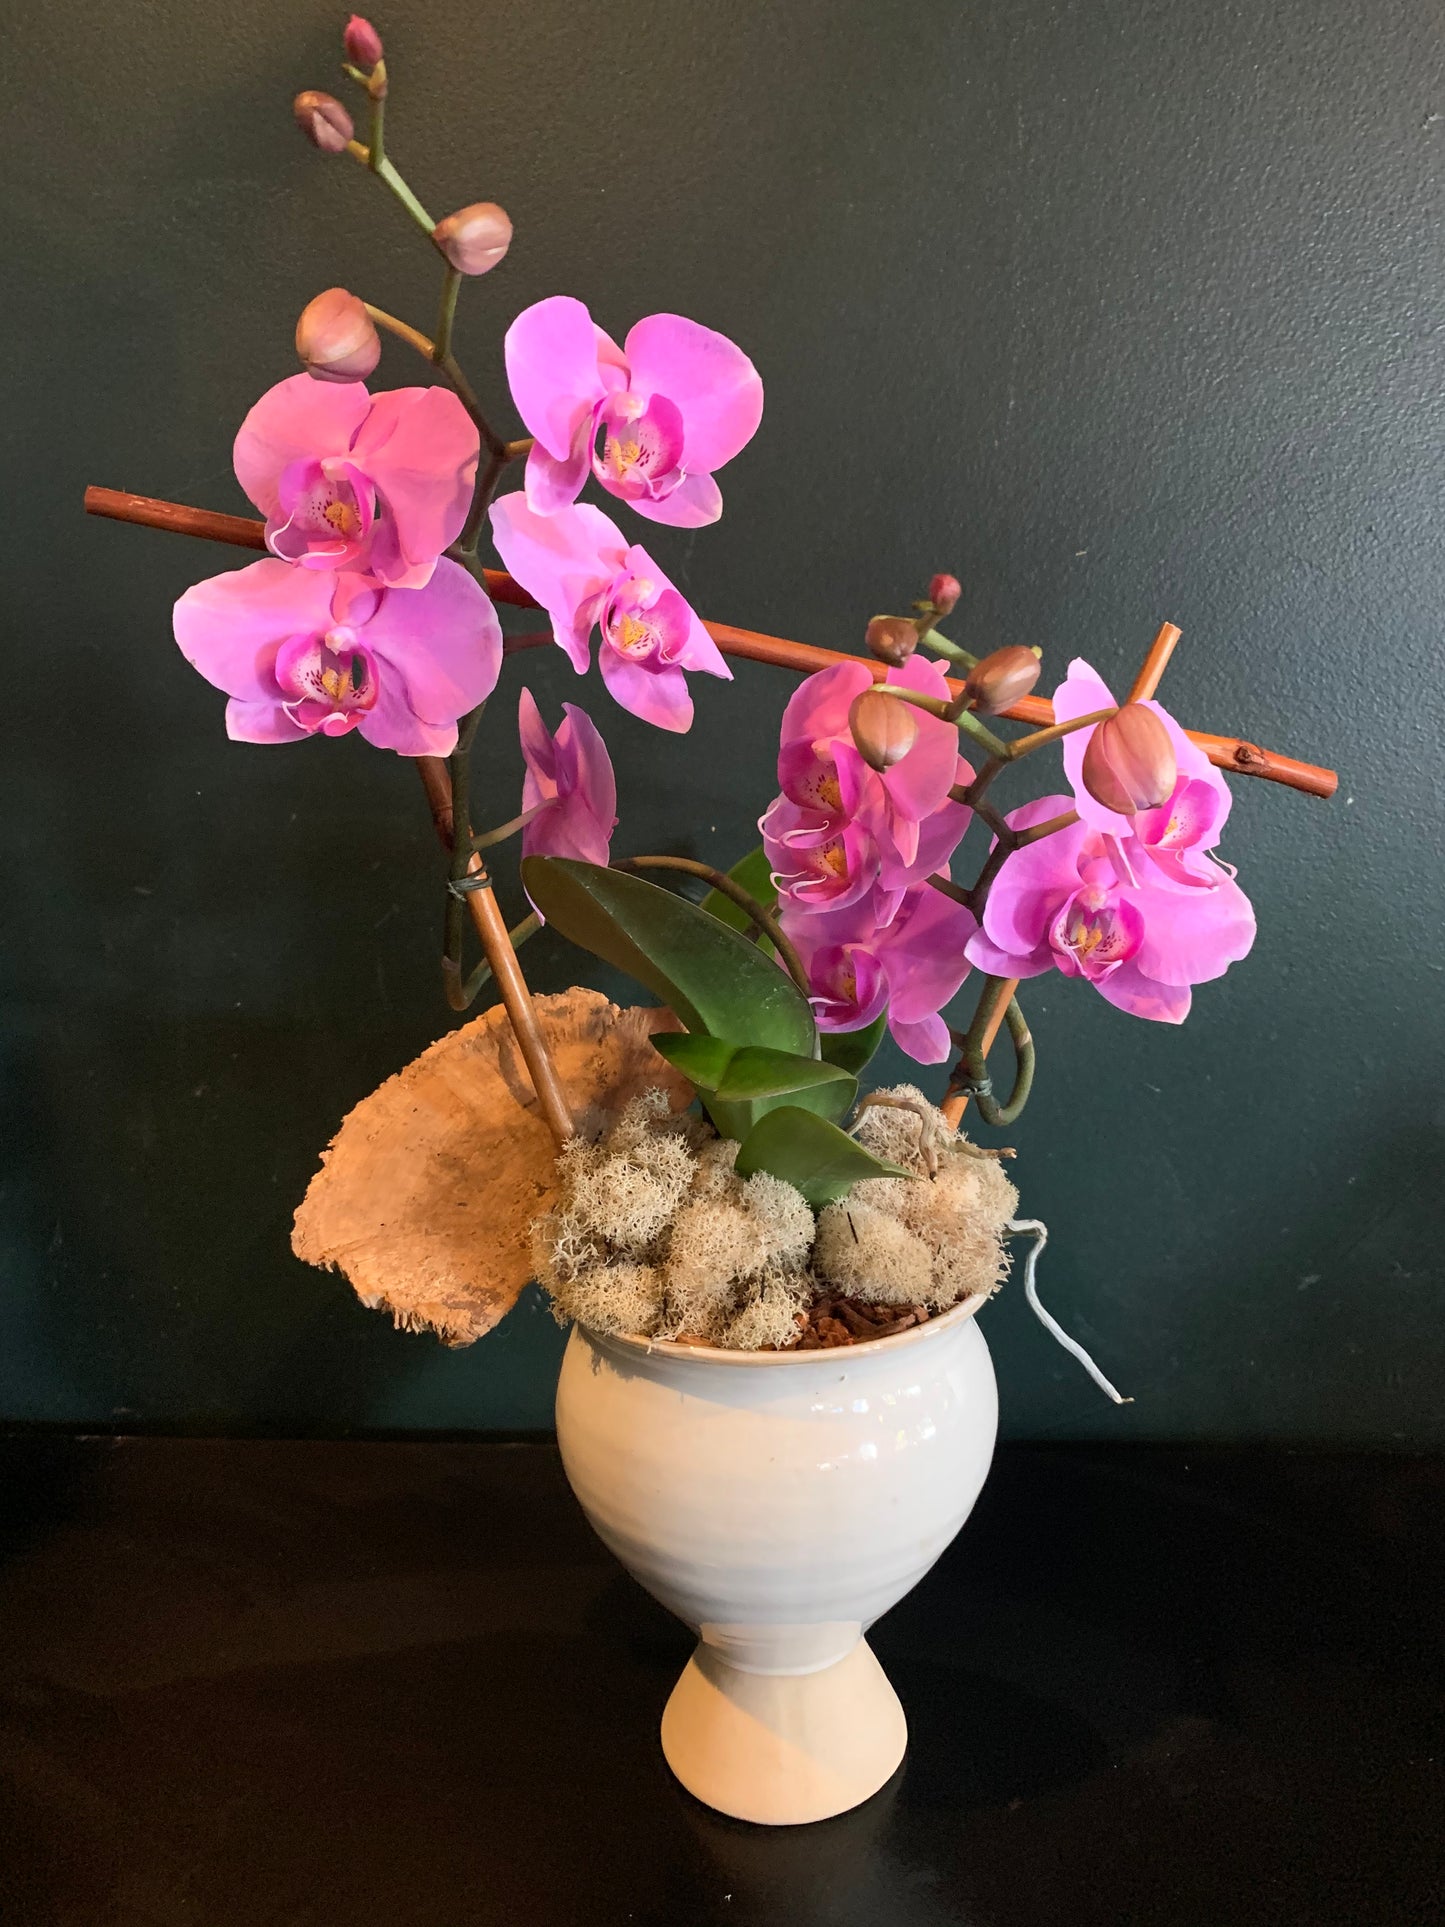 Medium (M) Orchid